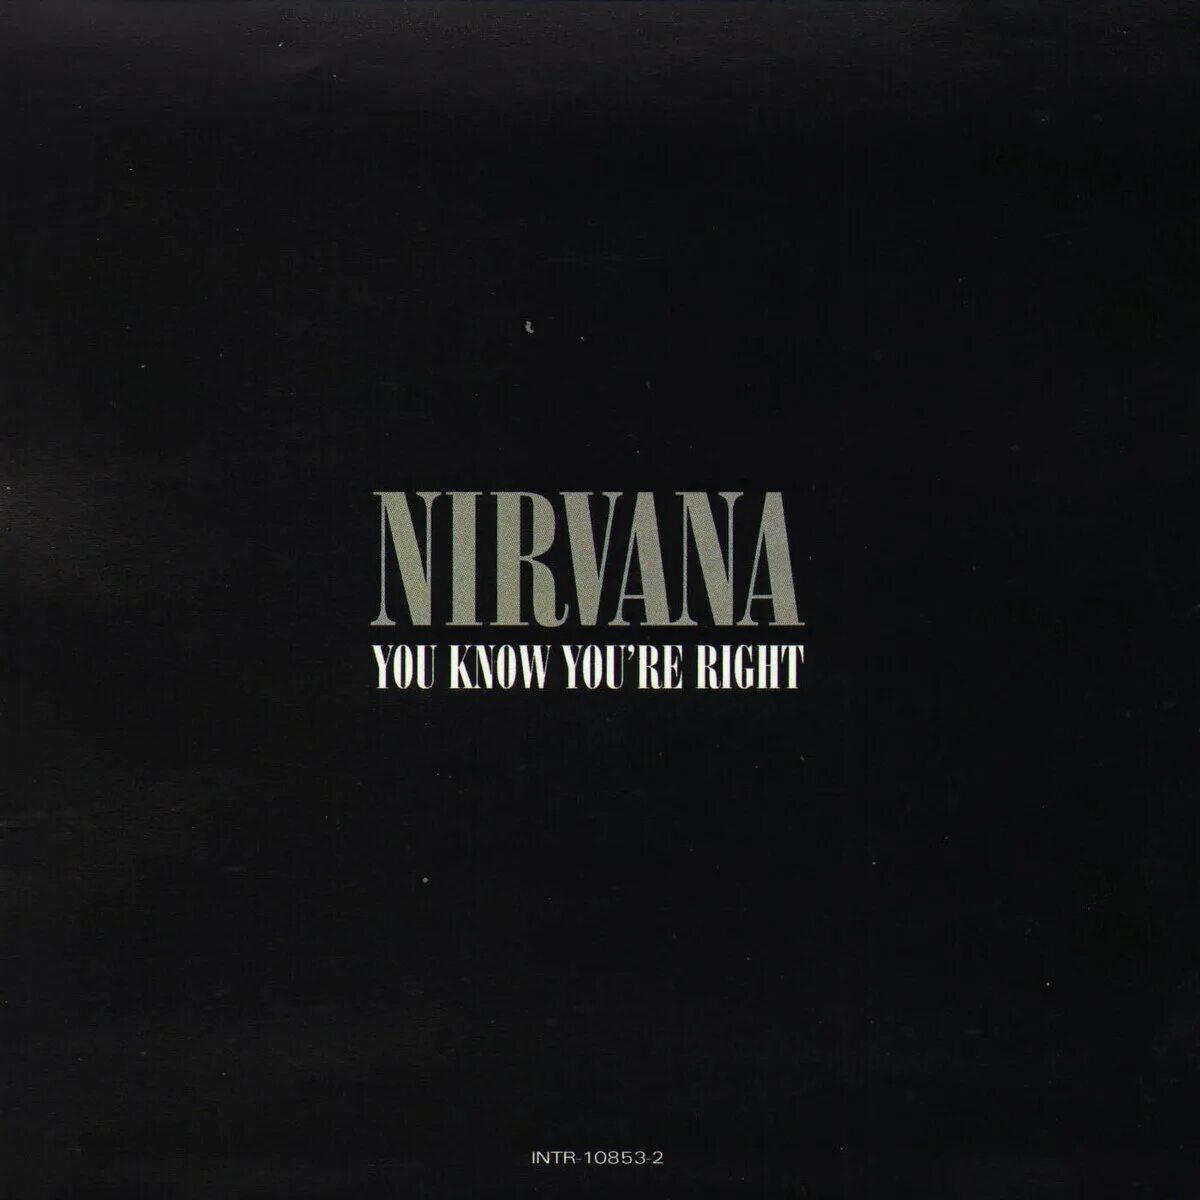 Nirvana 2002 обложка. Nirvana you know you're right альбом. Nirvana обложки альбомов. Nirvana альбом Nirvana. You know you re like it